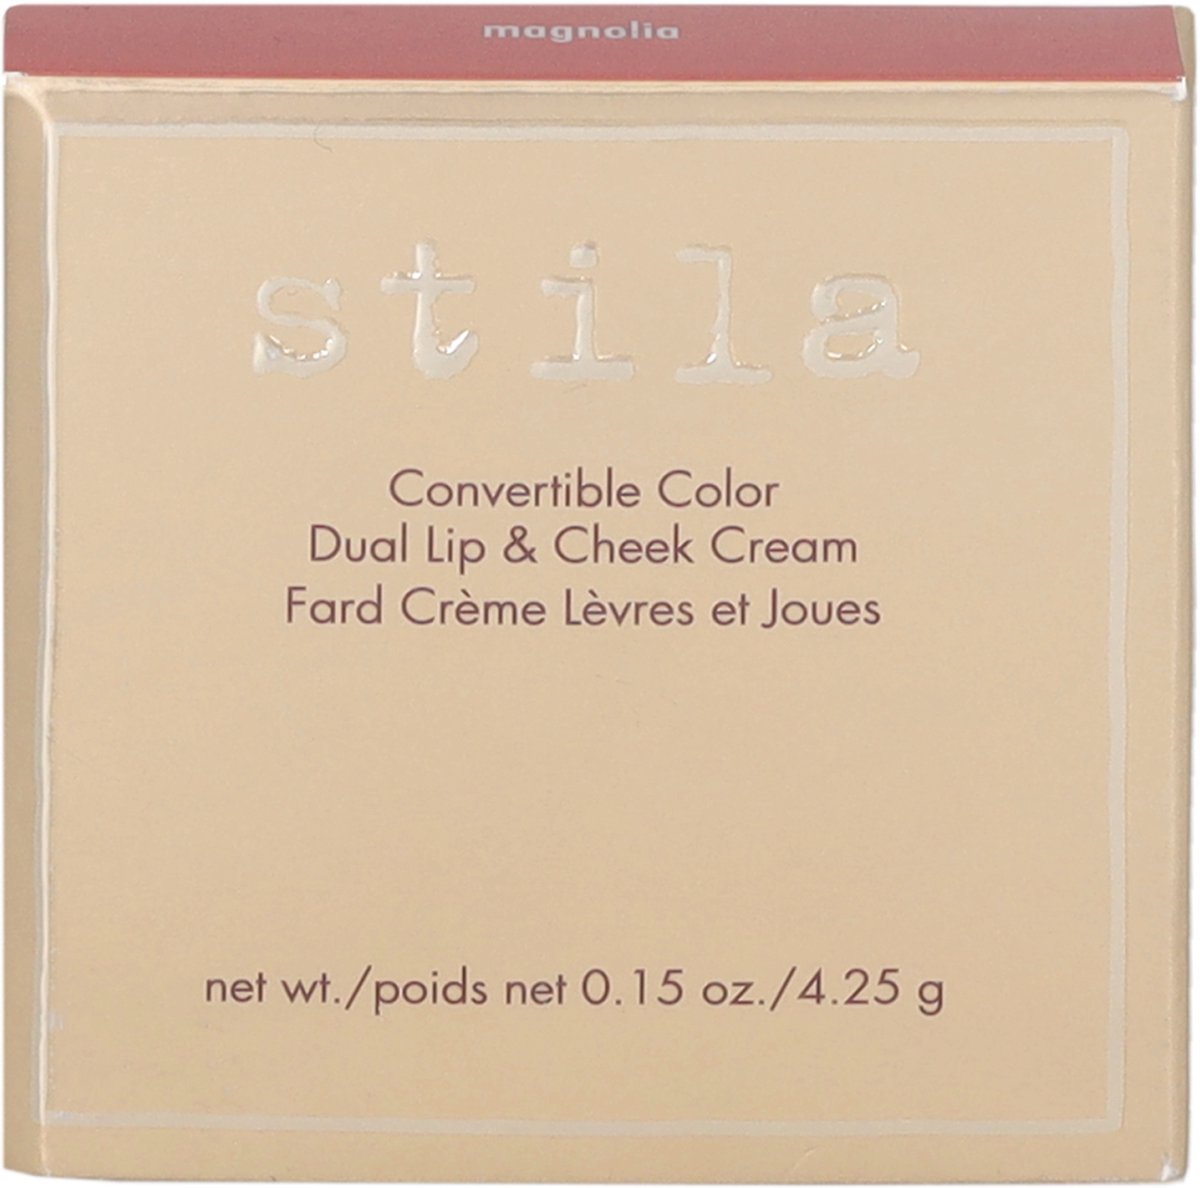 Stila Convertible Colour Dual Lip&Cheek Cream